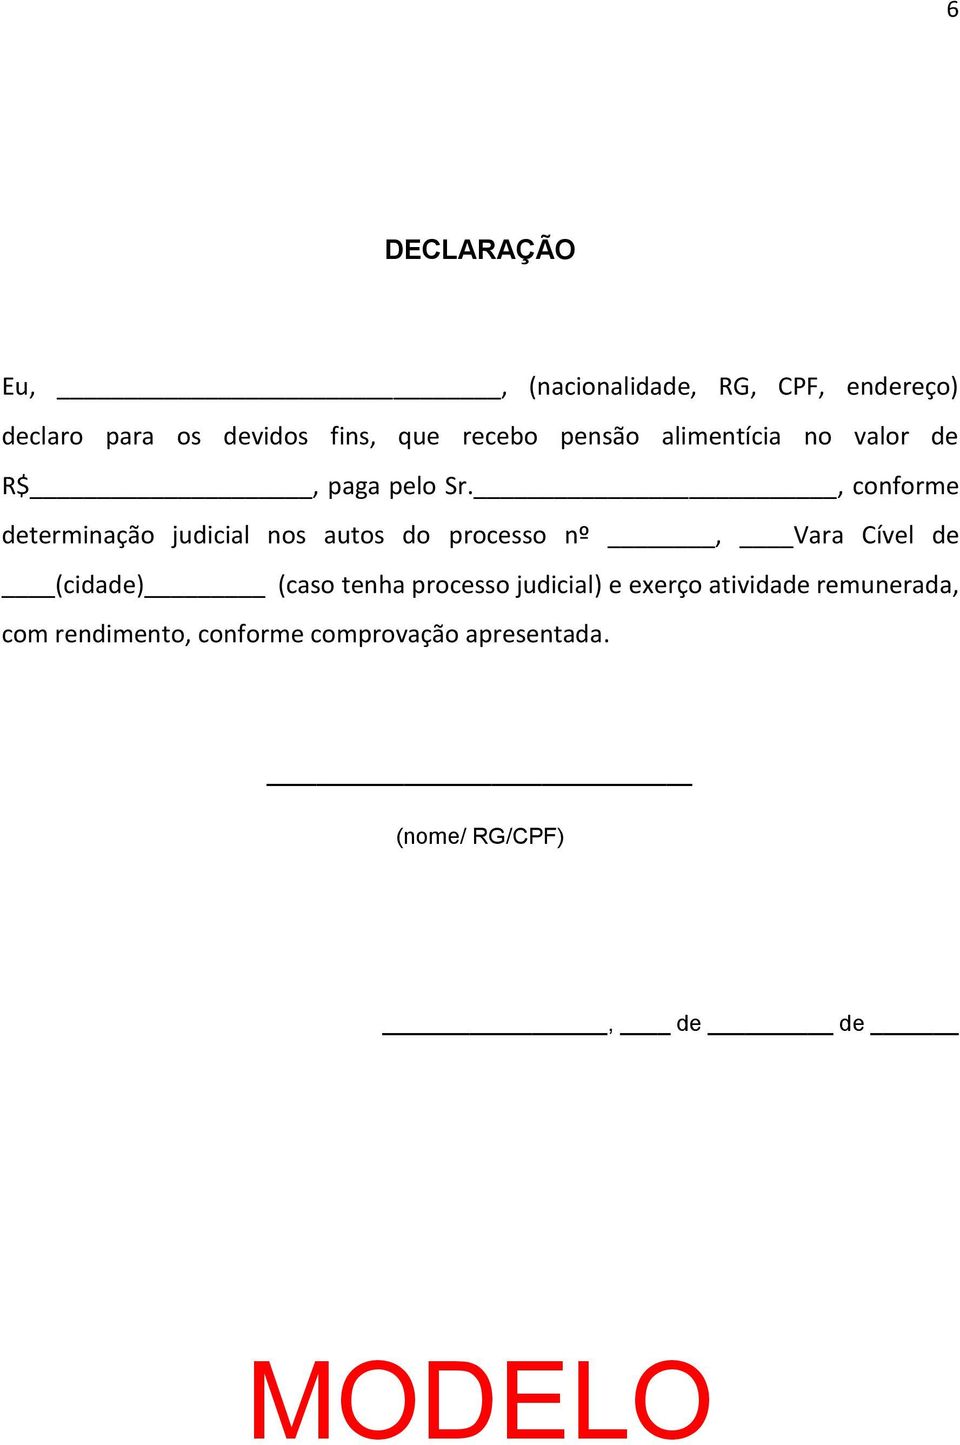 , conforme determinação judicial nos autos do processo nº, Vara Cível de (cidade) (caso